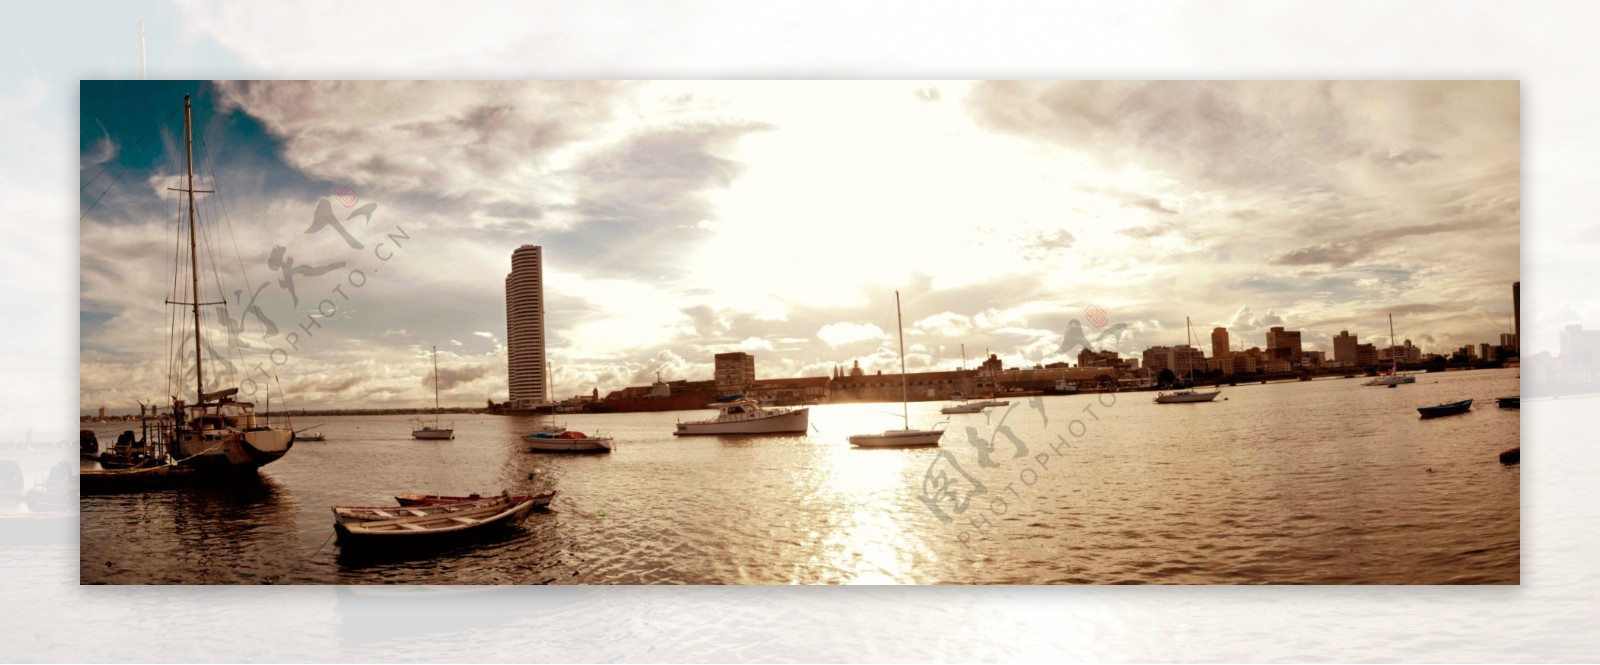 滨海城市风景游艇帆船全景360图片